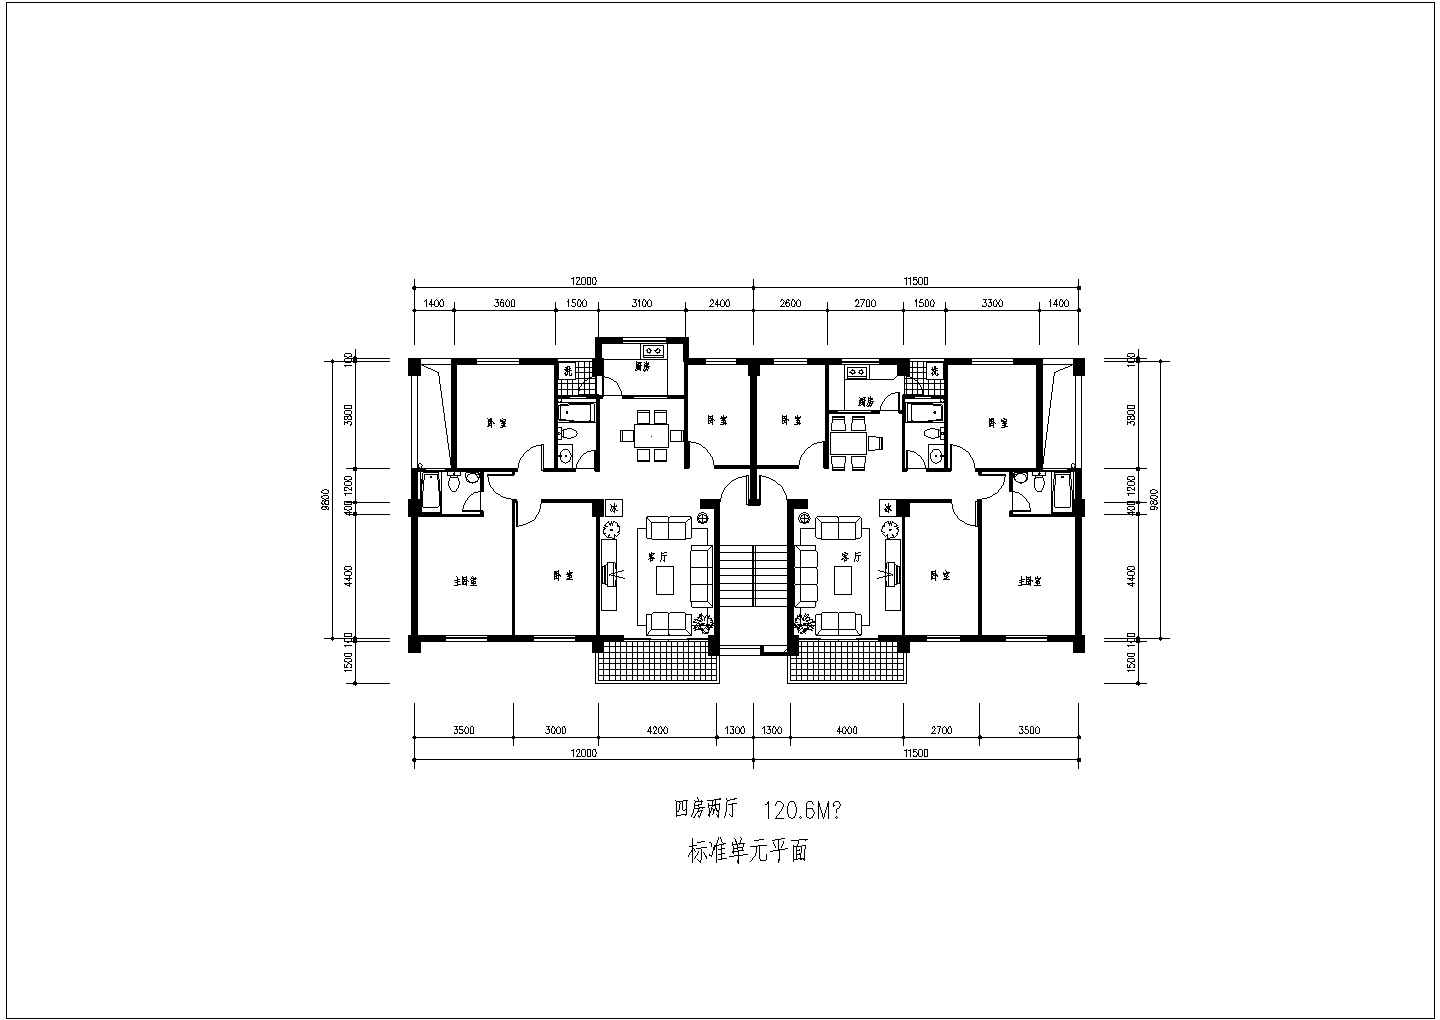 标准1梯2户单元楼户型设计图【4室2厅 120.6平】